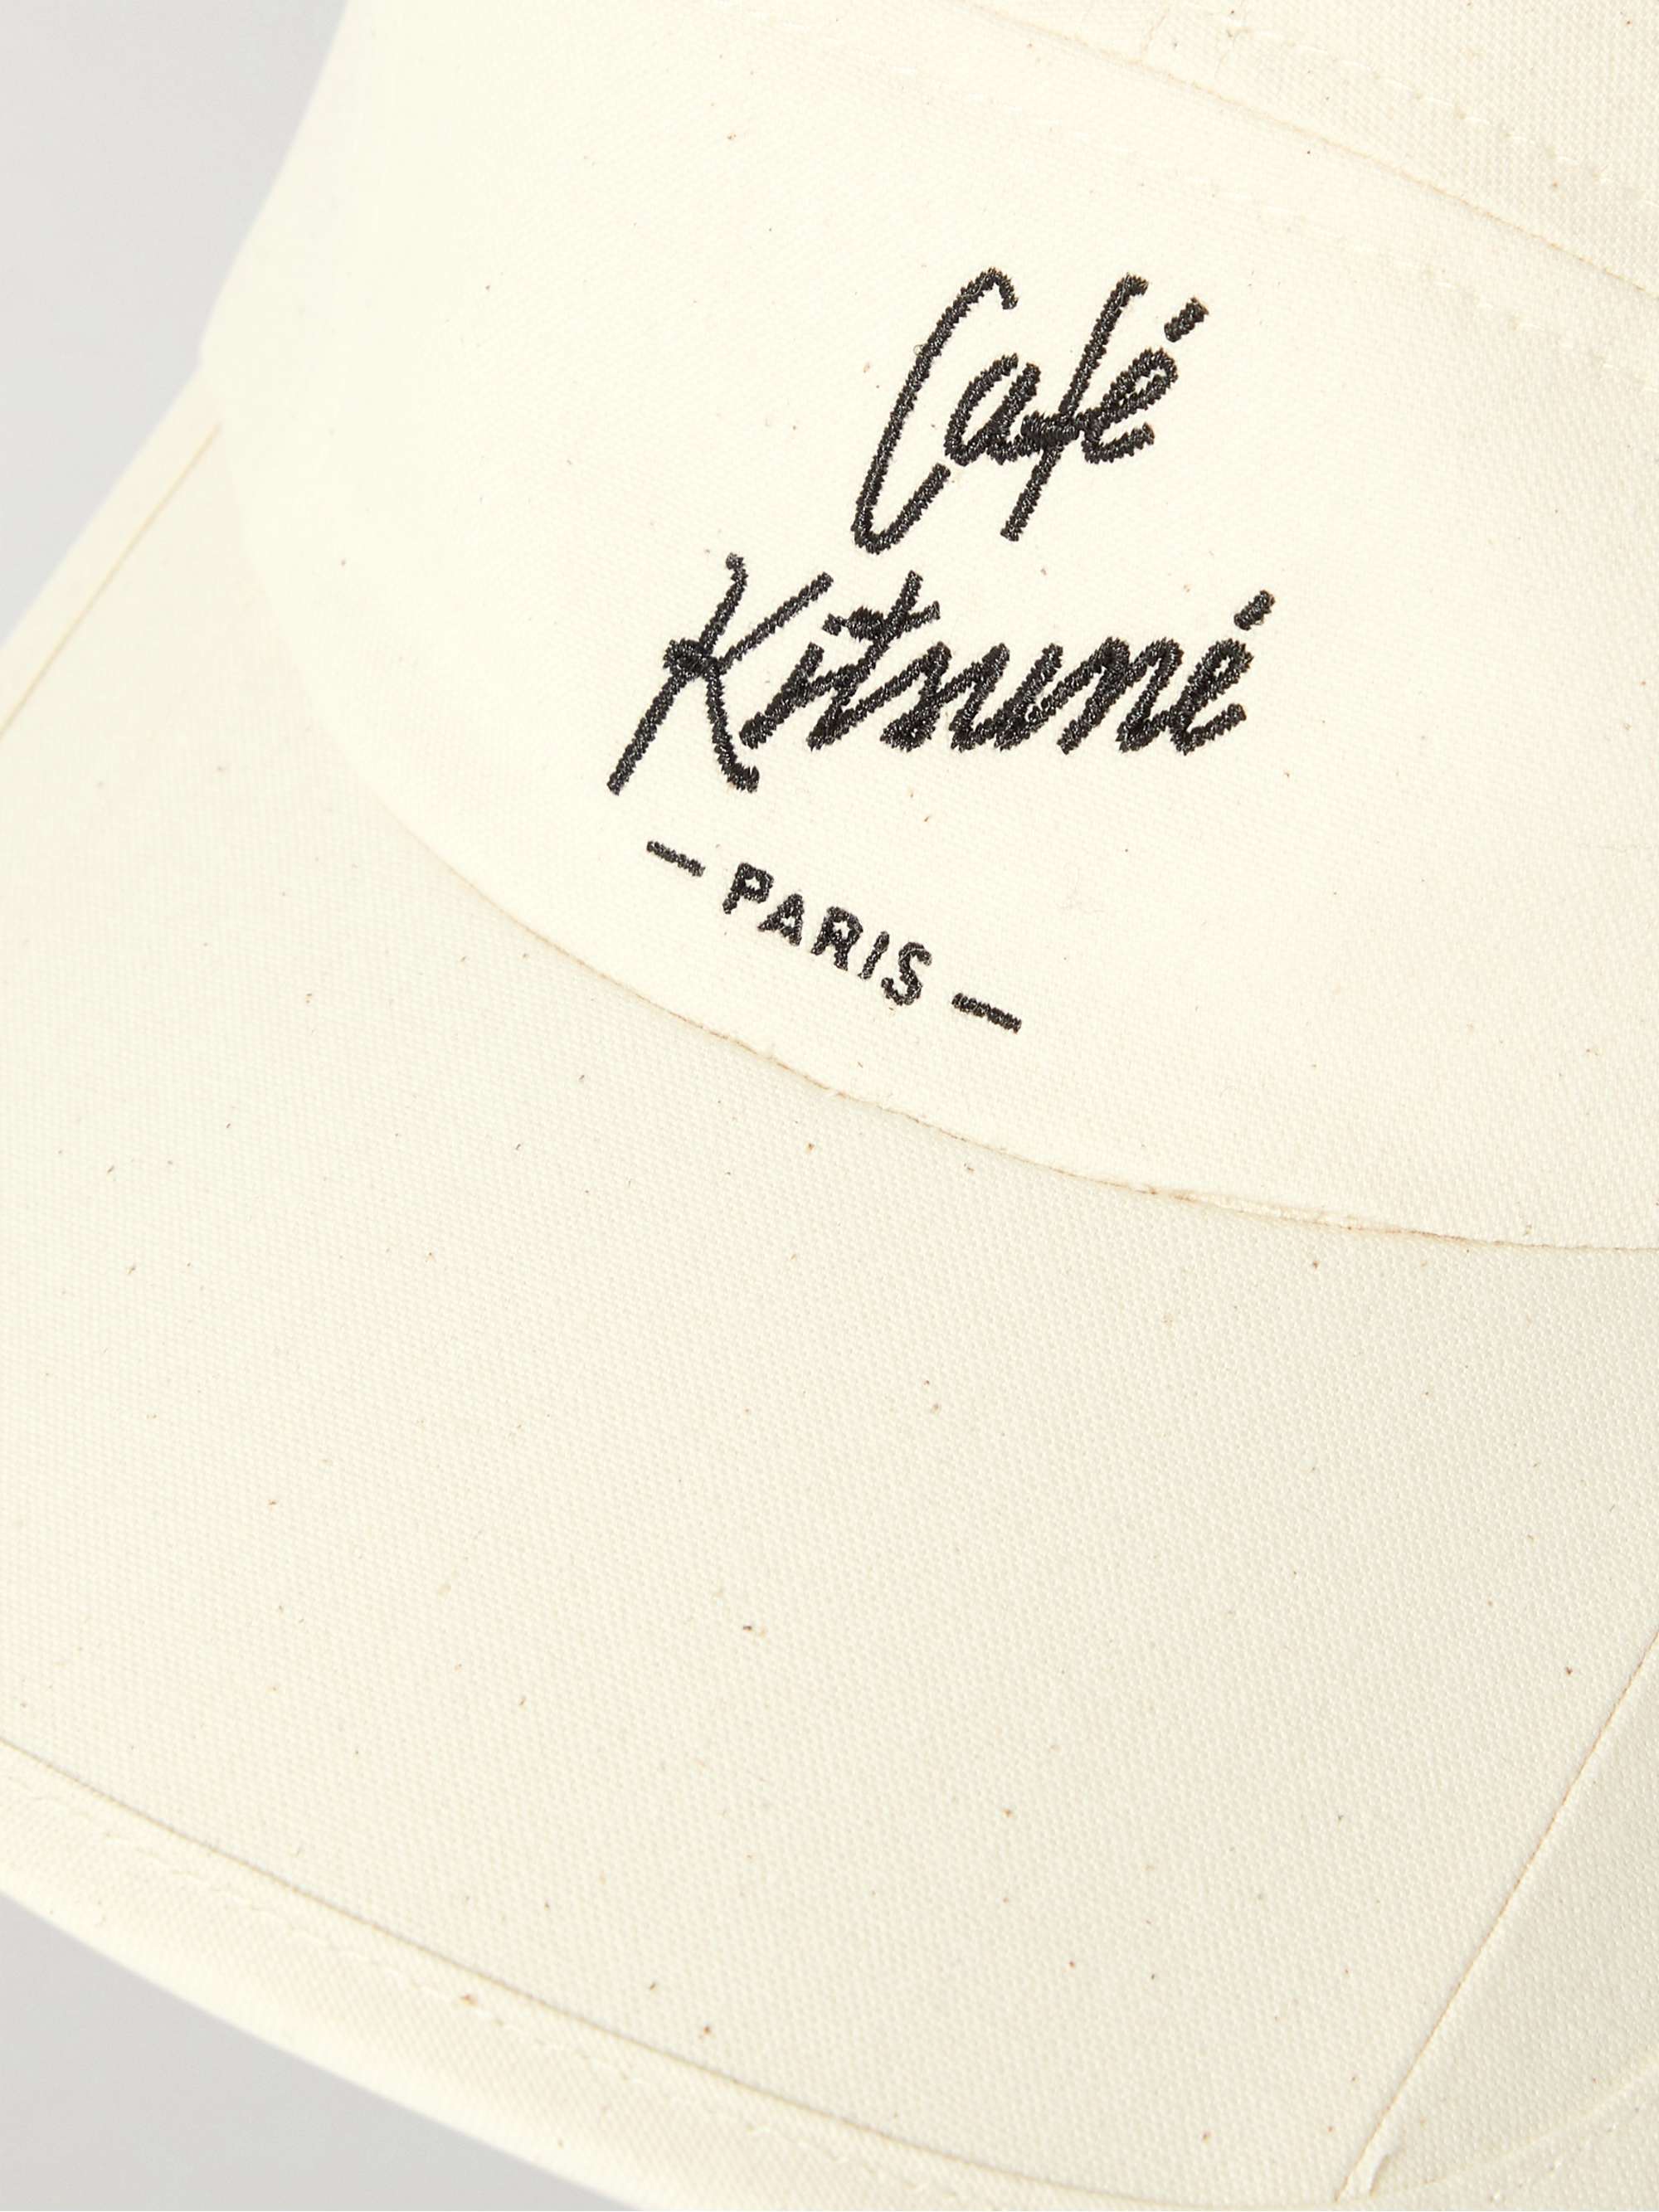 CAFÉ KITSUNÉ Logo-Embroidered Cotton-Blend Twill Baseball Cap